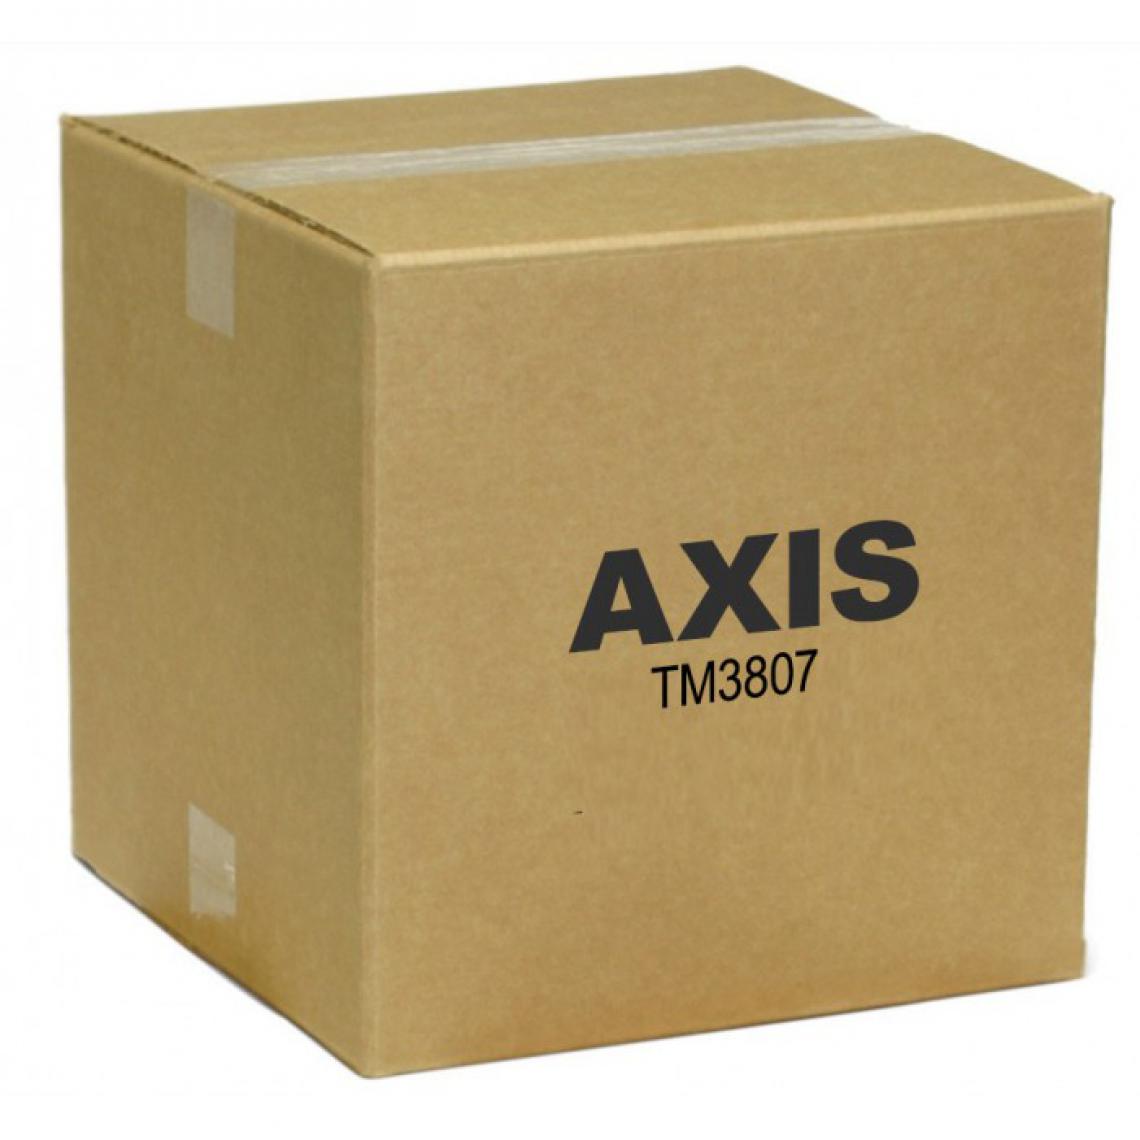 Axis - TM3807 - Bracelet connecté